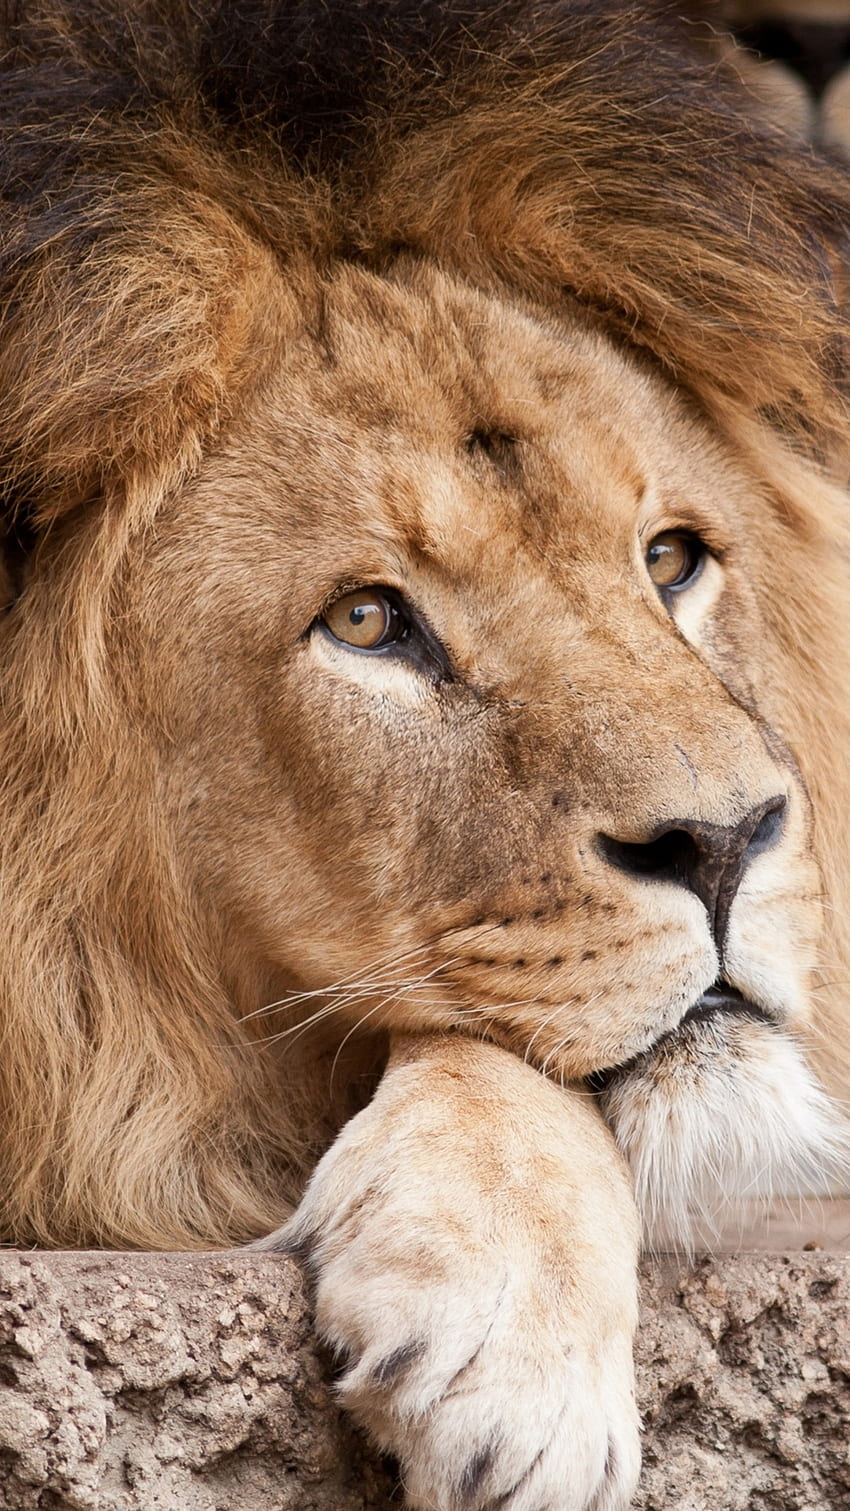 Ngắm nhìn hình ảnh sư tử thương tâm đang khóc lóc vì gìn giữ đồng bằng hoang vu. Nét đẹp hoang dã của loài sư tử sẽ khiến bạn hoàn toàn nể phục và yêu mến chúng. 